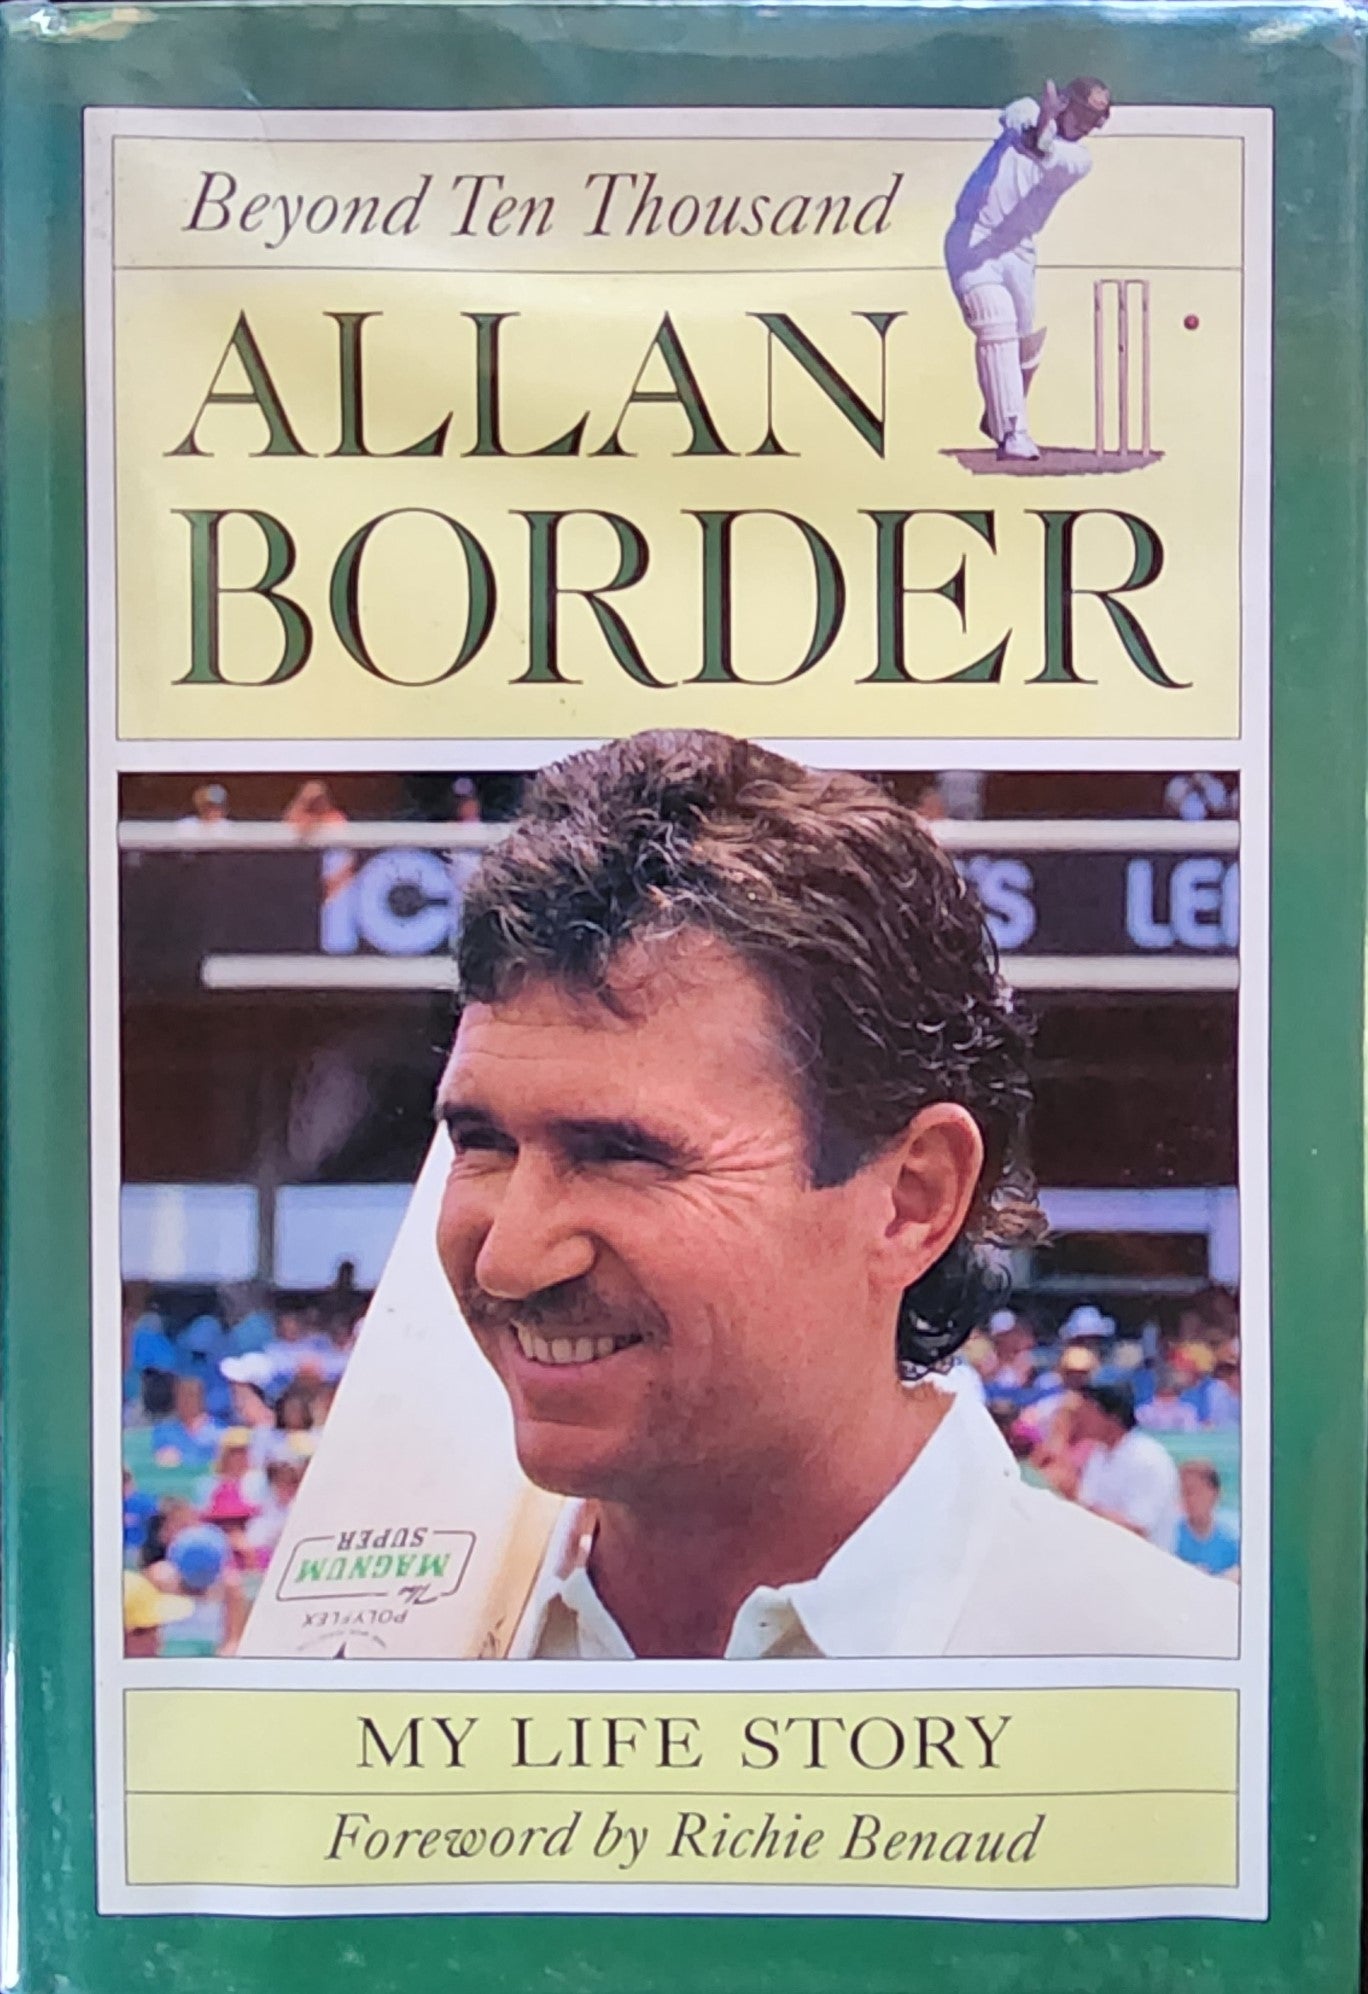 Allan Border: Beyond Ten Thousand